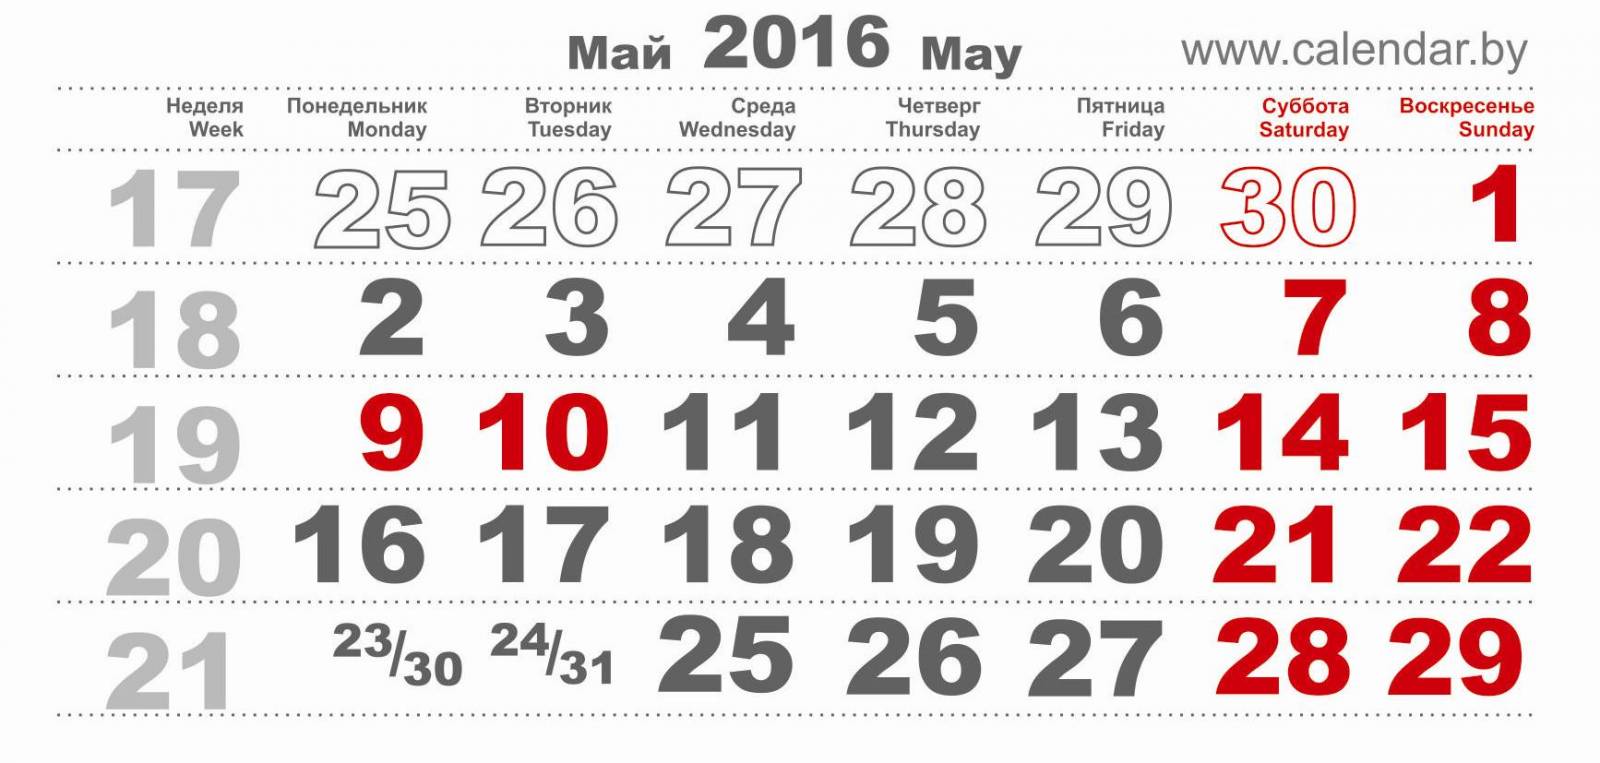 Выходные в мае 2016 года в России: как отдыхаем на майские праздники в 2016 году в России?